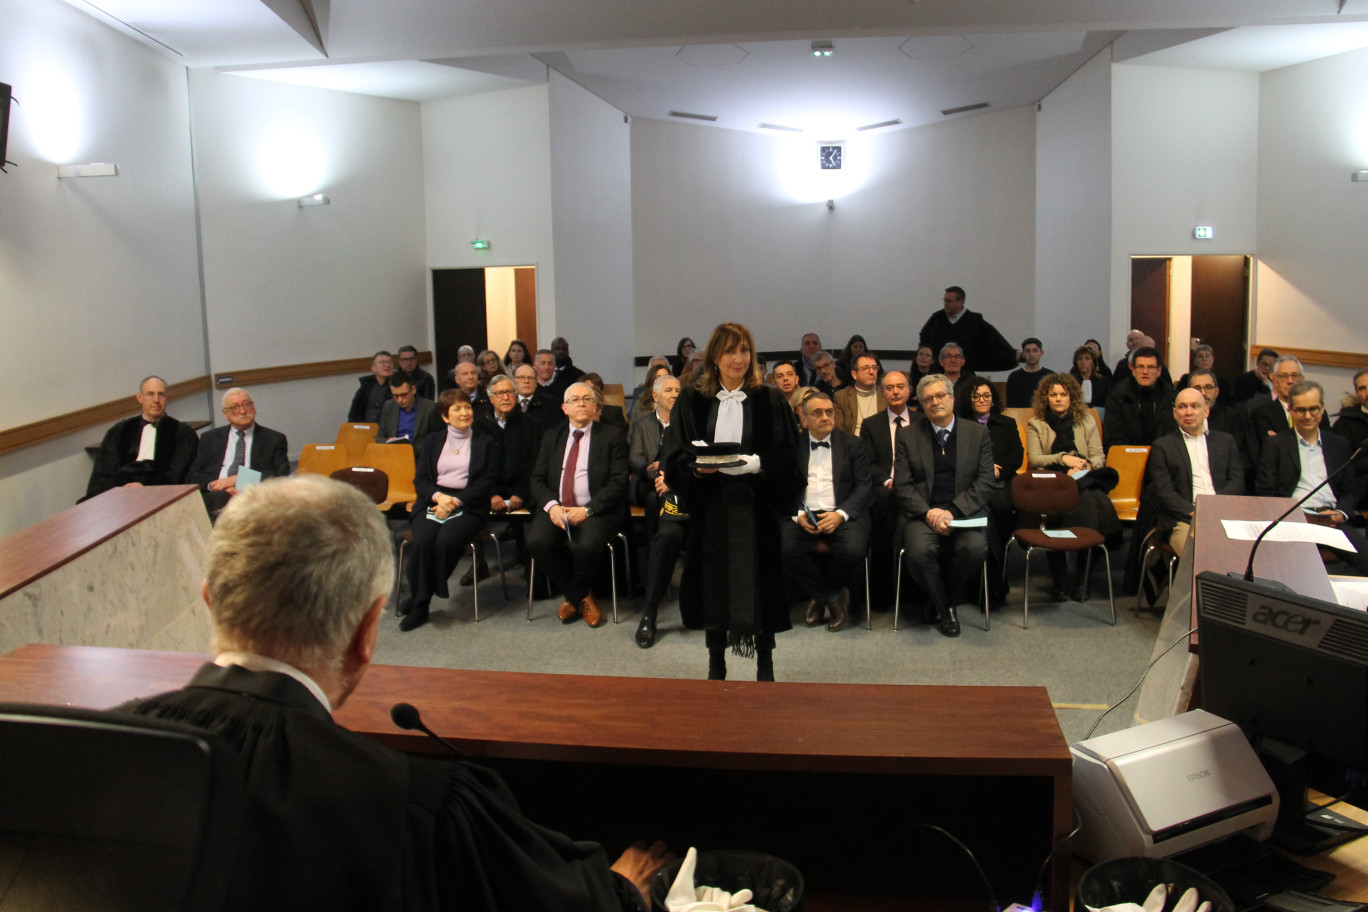 La justice commerciale nancéienne se renforce avec l’arrivée de Christine Vigneron. Elle vient d’être installée dans ses fonctions de juge à l’occasion de l’audience solennelle du tribunal de commerce le 18 janvier.